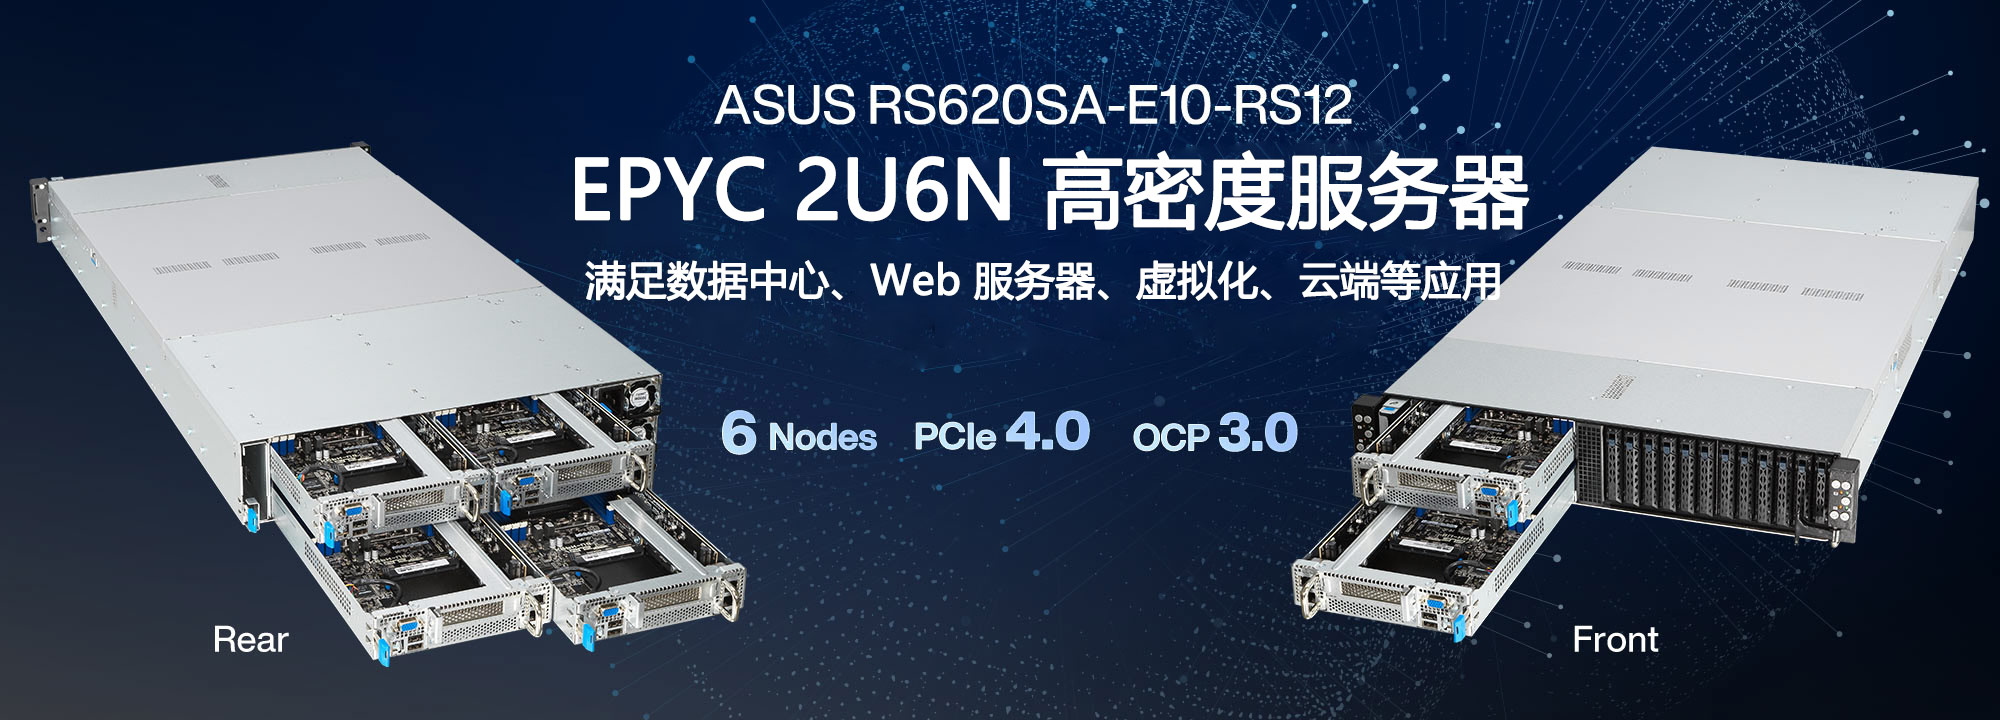 ASUS RS620SA-E10-RS12 - EPYC 2U6N 服务器